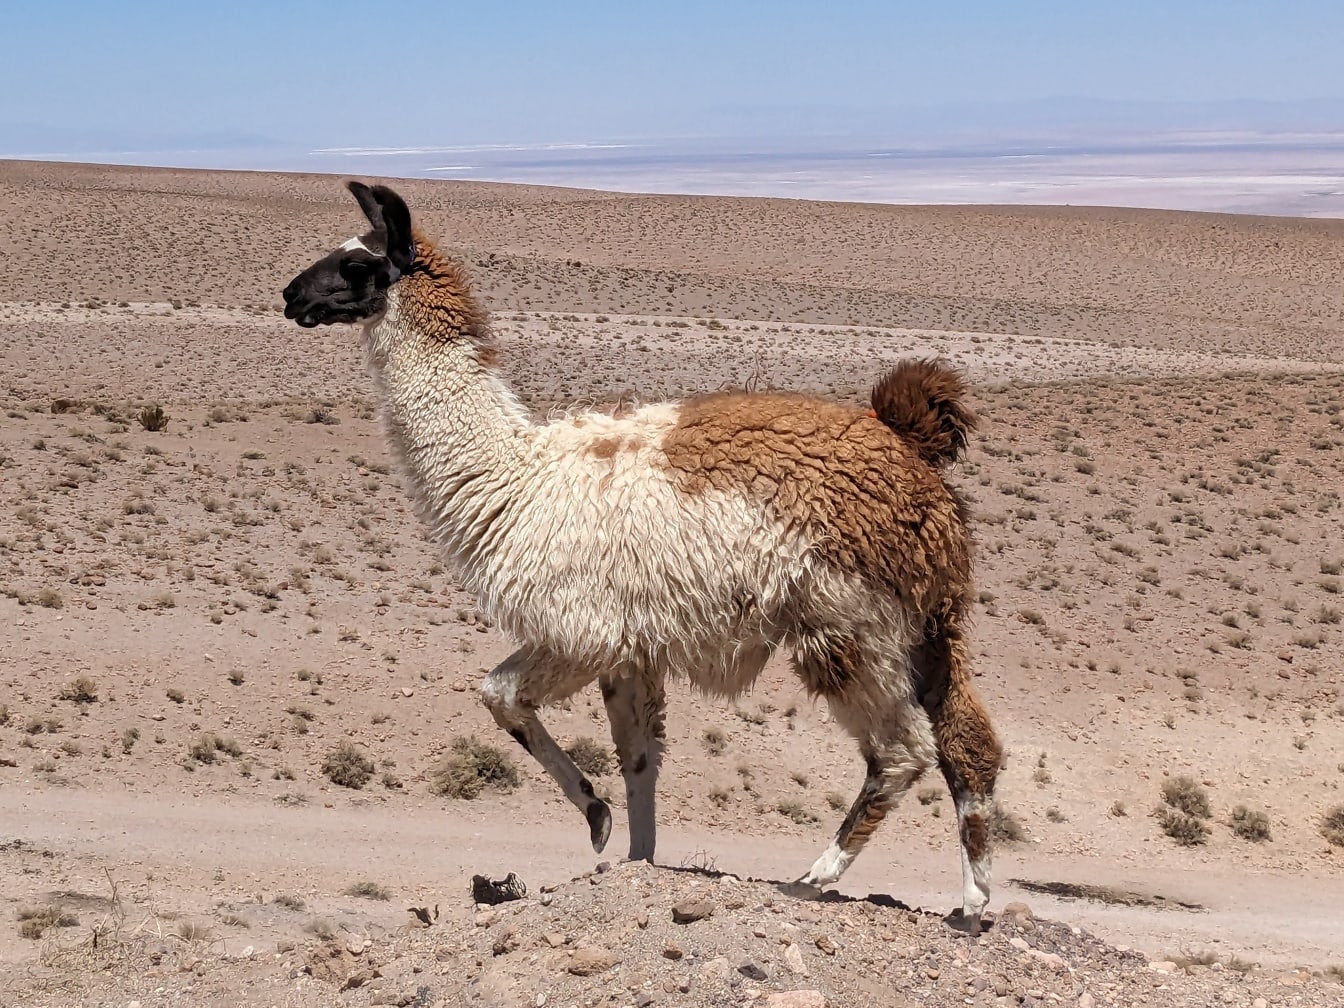 Peruaanse Lama loopt op heuvel in woestijn op grote hoogte (Lama glama)